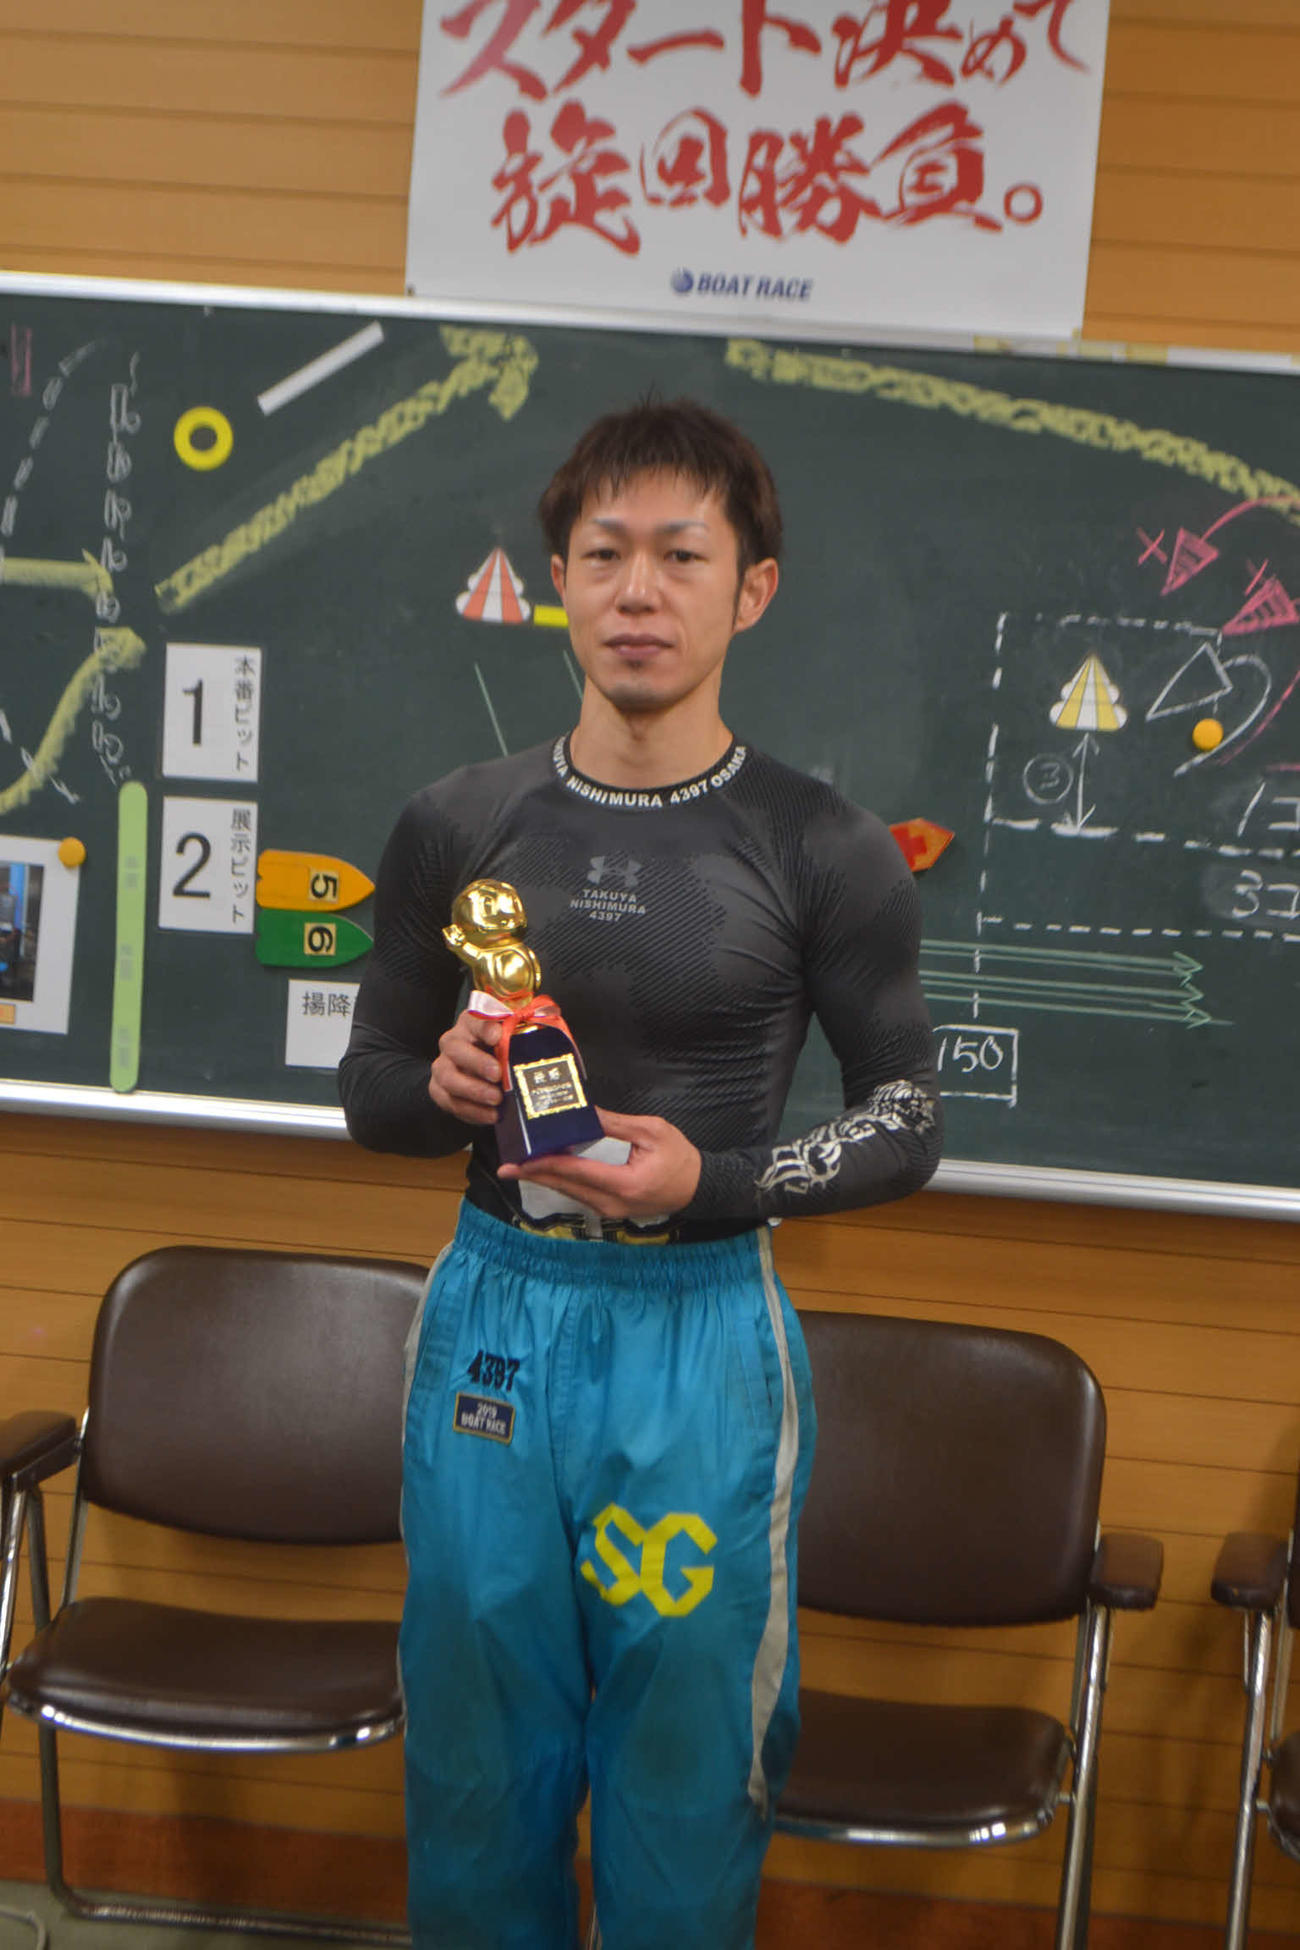 インから押し切った西村拓也は今年4度目、若松では初優勝を飾った